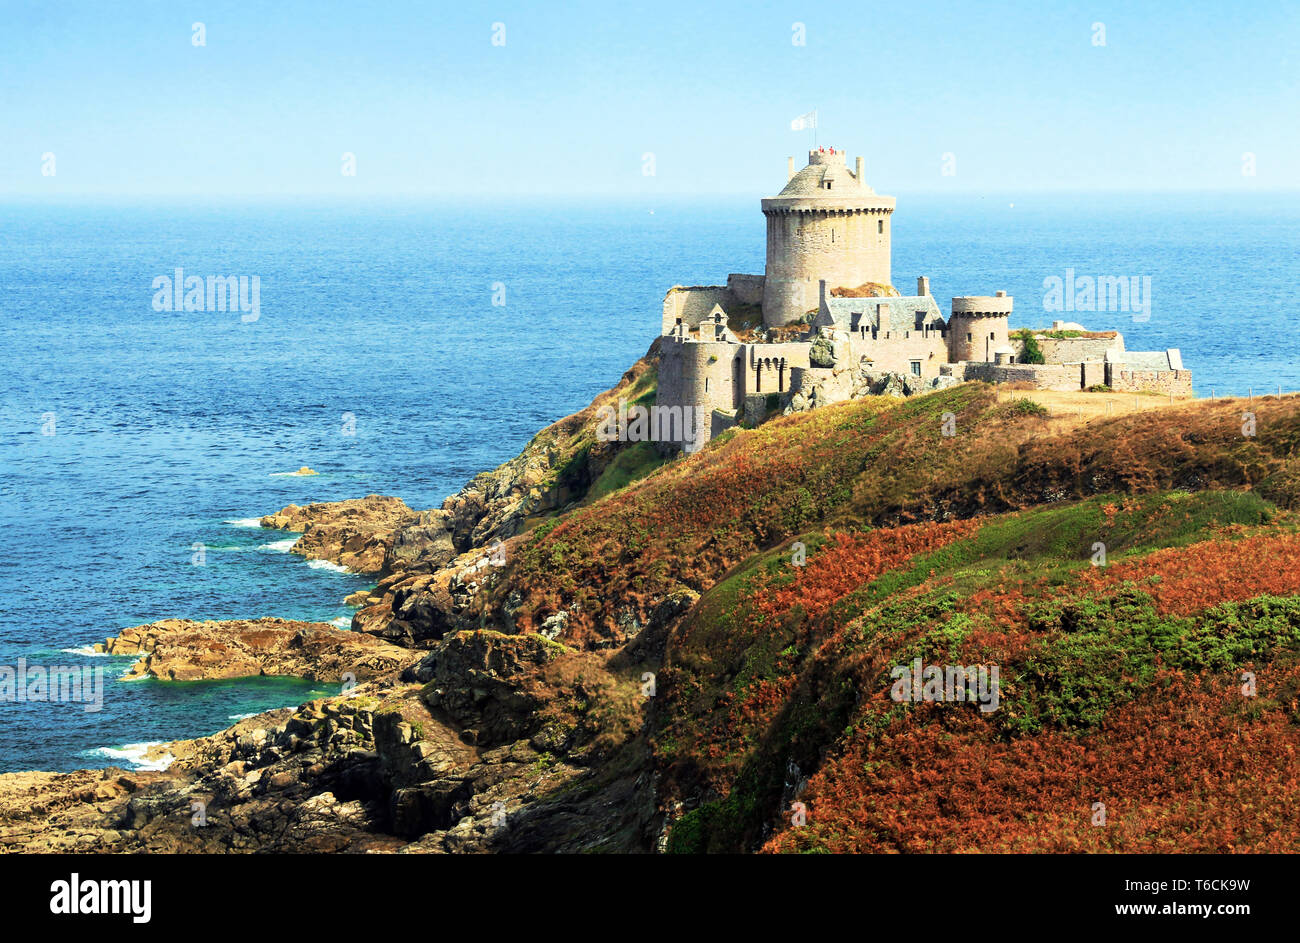 La côte bretonne point occupé par un Fort La Latte en Bretagne, France. Banque D'Images